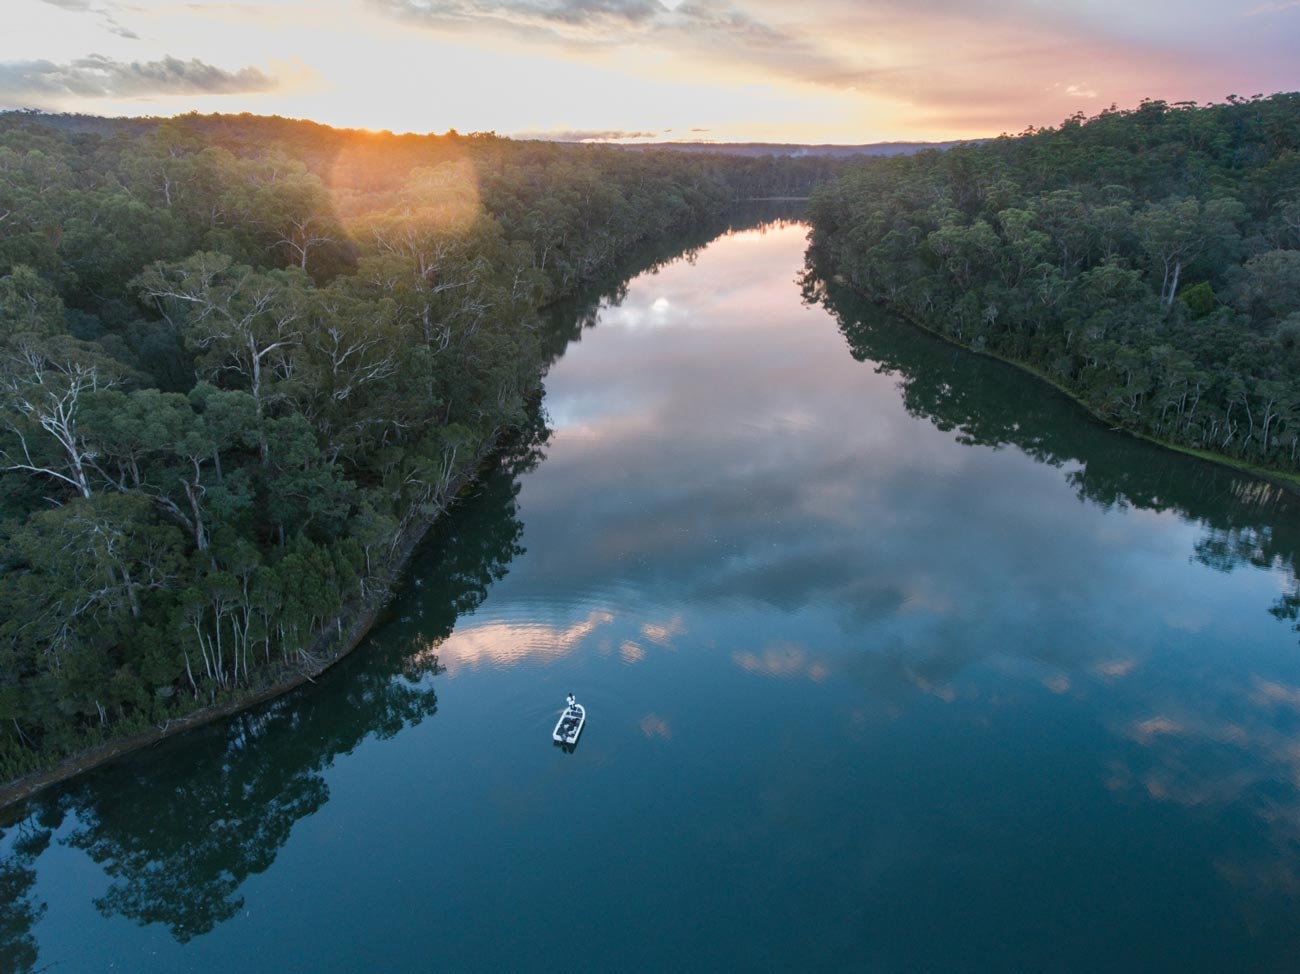 River in Australia at dusk